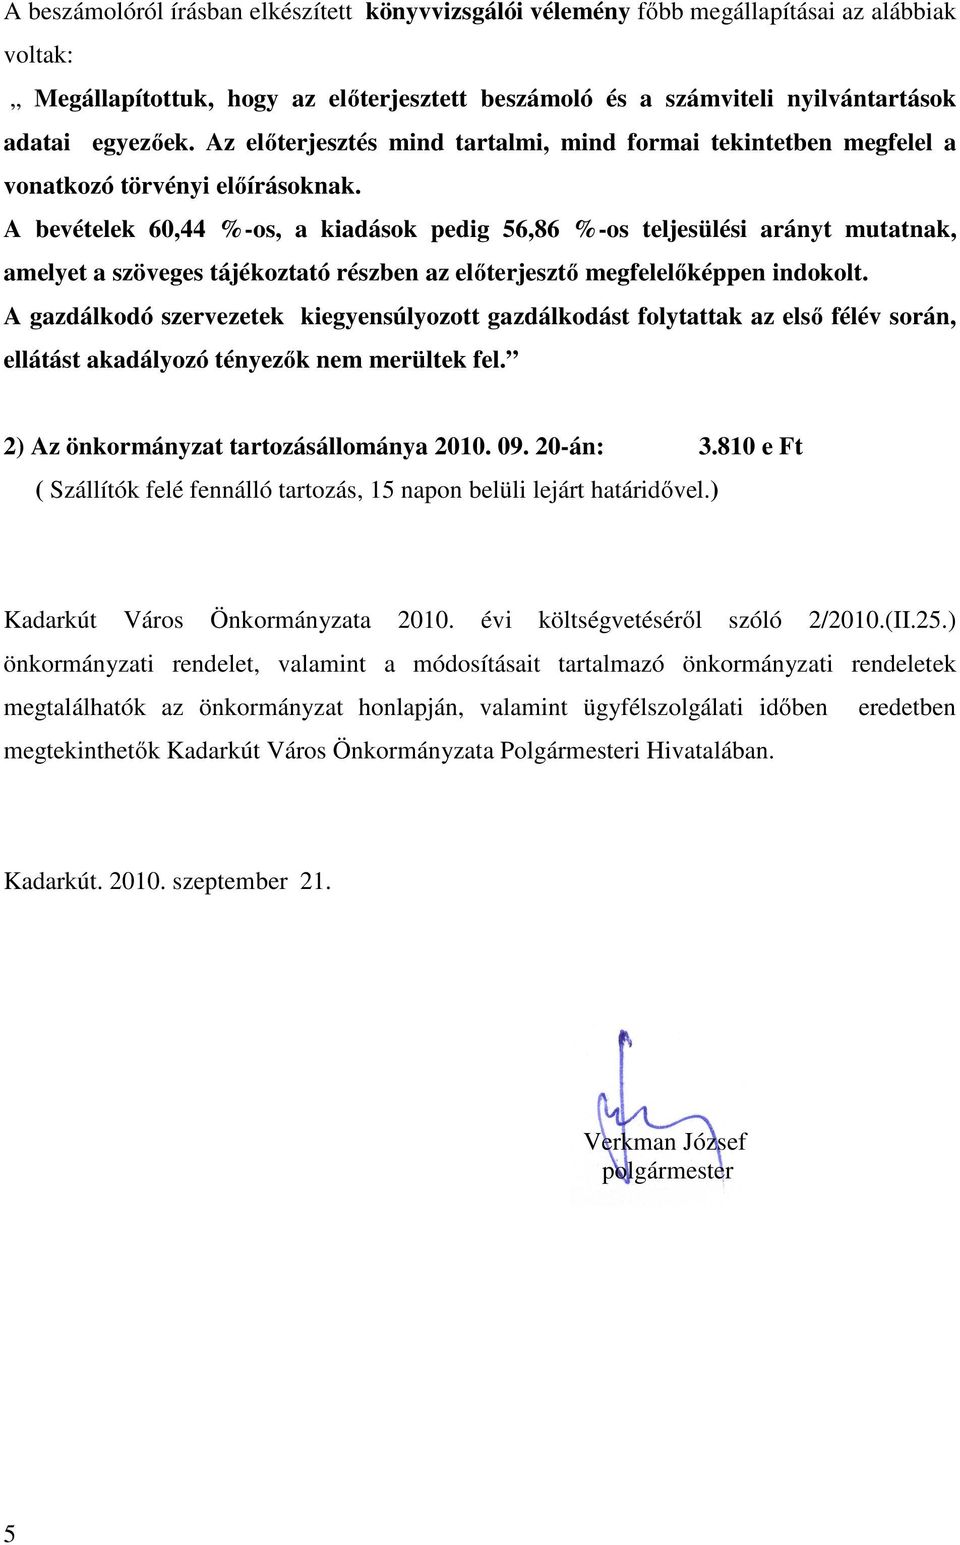 A bevételek 60,44 %-os, a kiadások pedig 56,86 %-os teljesülési arányt mutatnak, amelyet a szöveges tájékoztató részben az elıterjesztı megfelelıképpen indokolt.